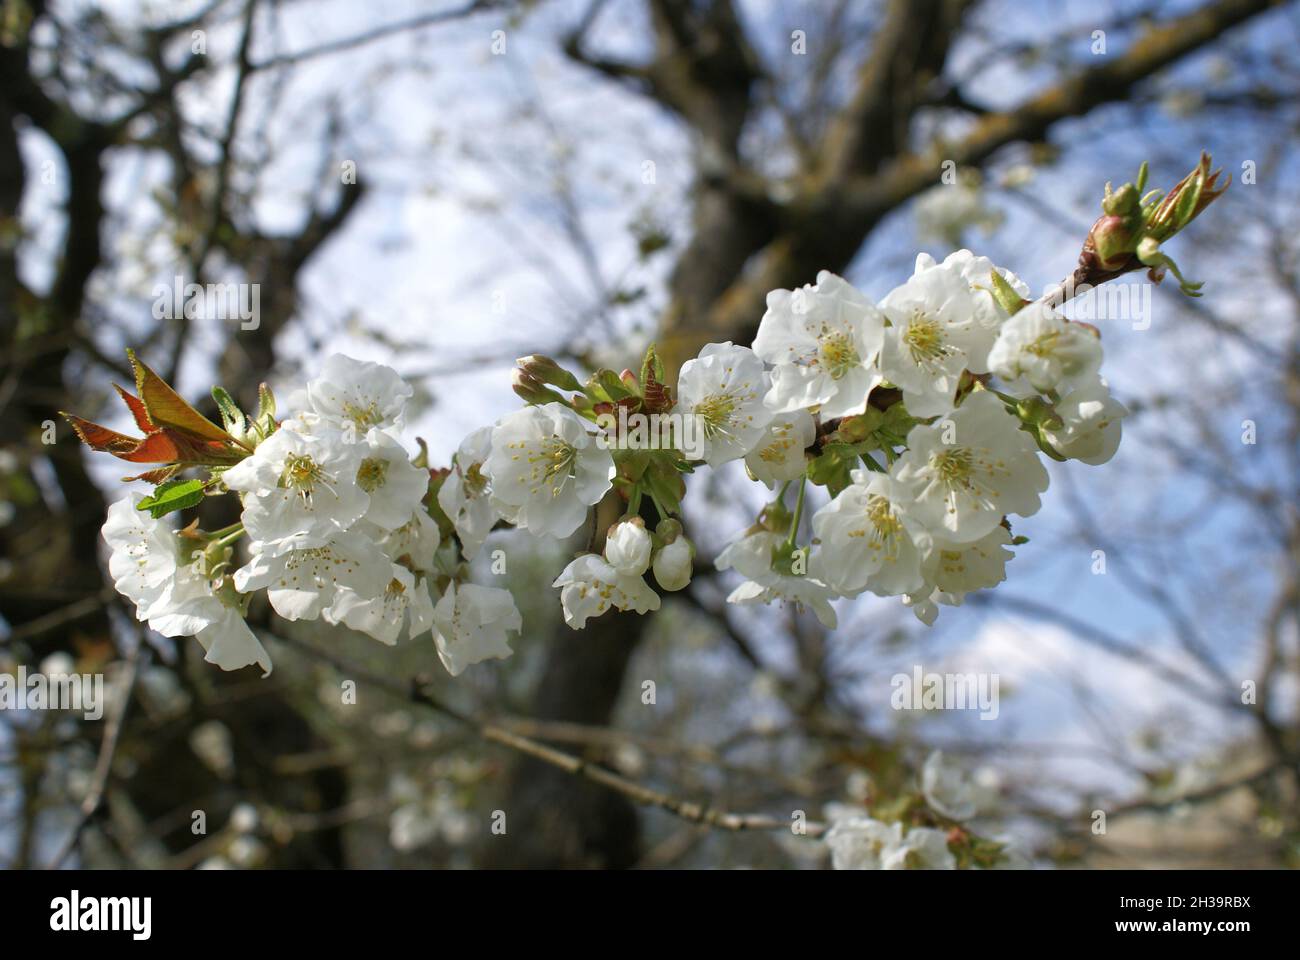 albero da frutto fiorito Foto de stock